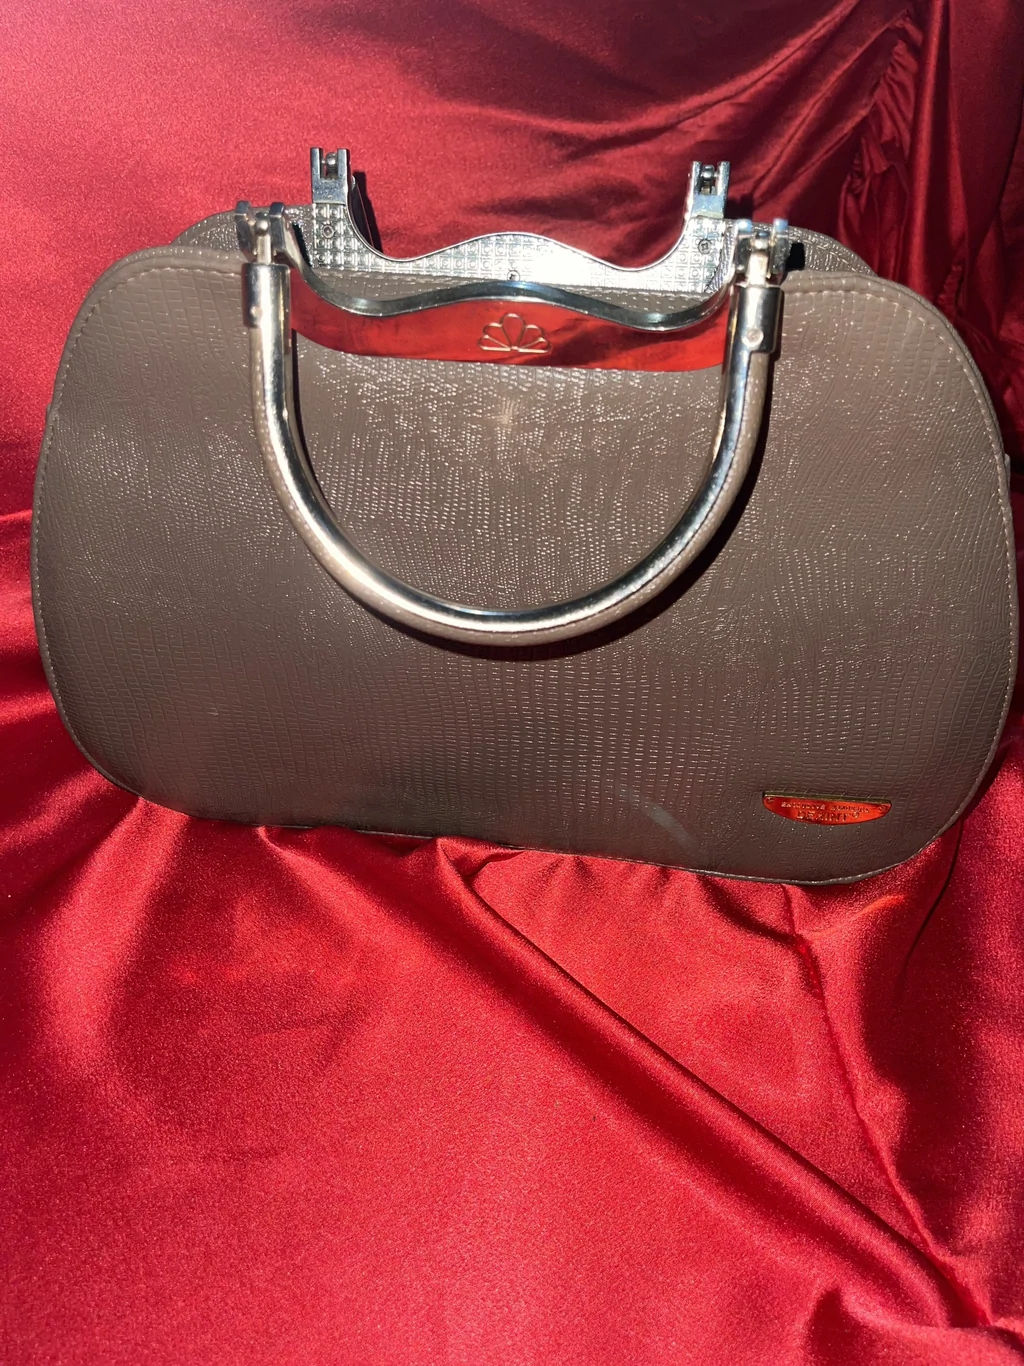 Louis Vuitton LV zenska kozna torba 3u1 model 8 - KupujemProdajem